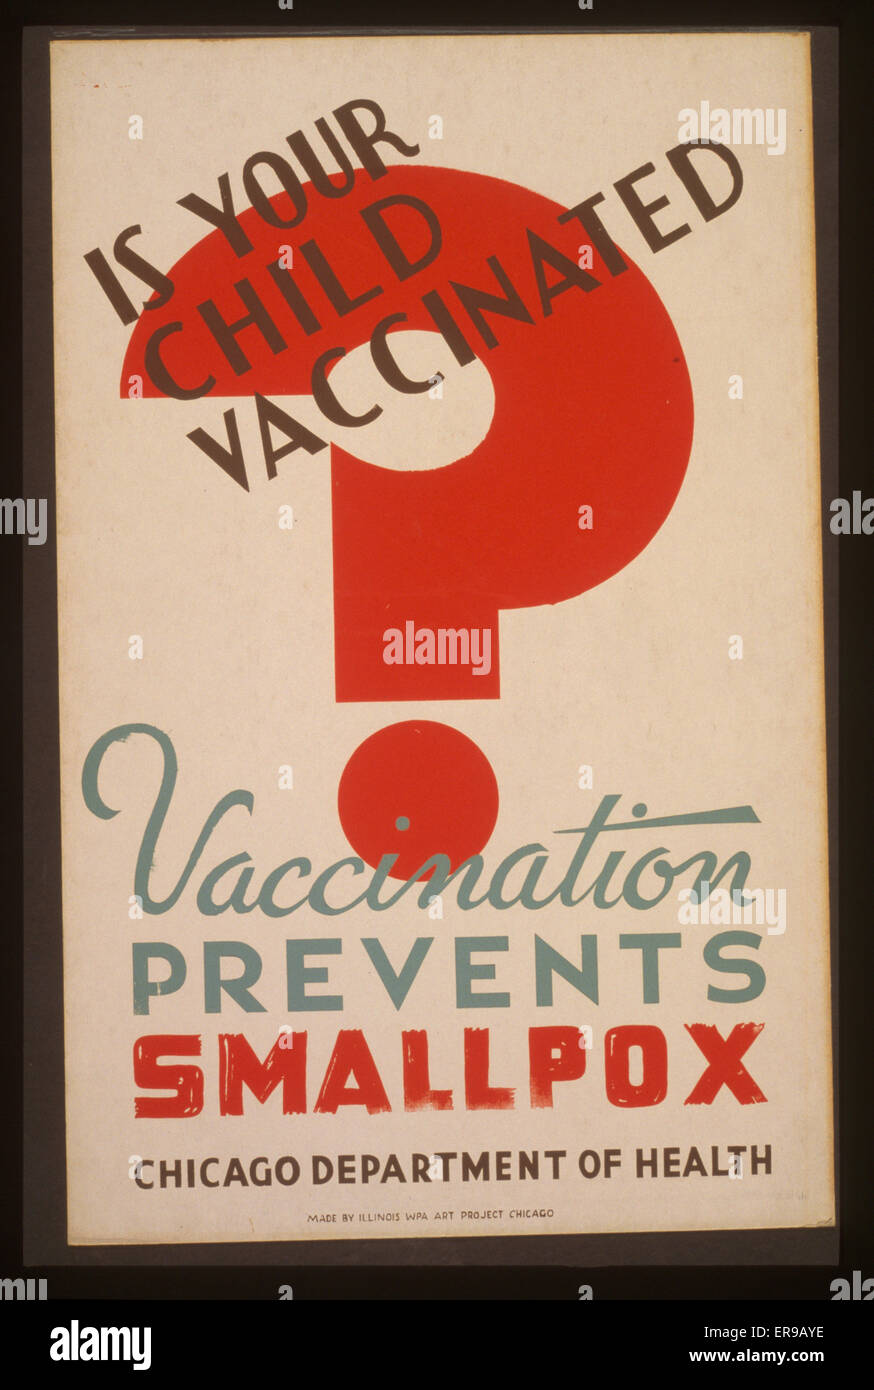 Es su niño vacunado la vacunación evita la viruela - Departamento de Salud de Chicago. Cartel para el Departamento de Salud de Chicago mostrando gran signo de interrogación rojo. Fecha entre 1936 y 1941. Foto de stock